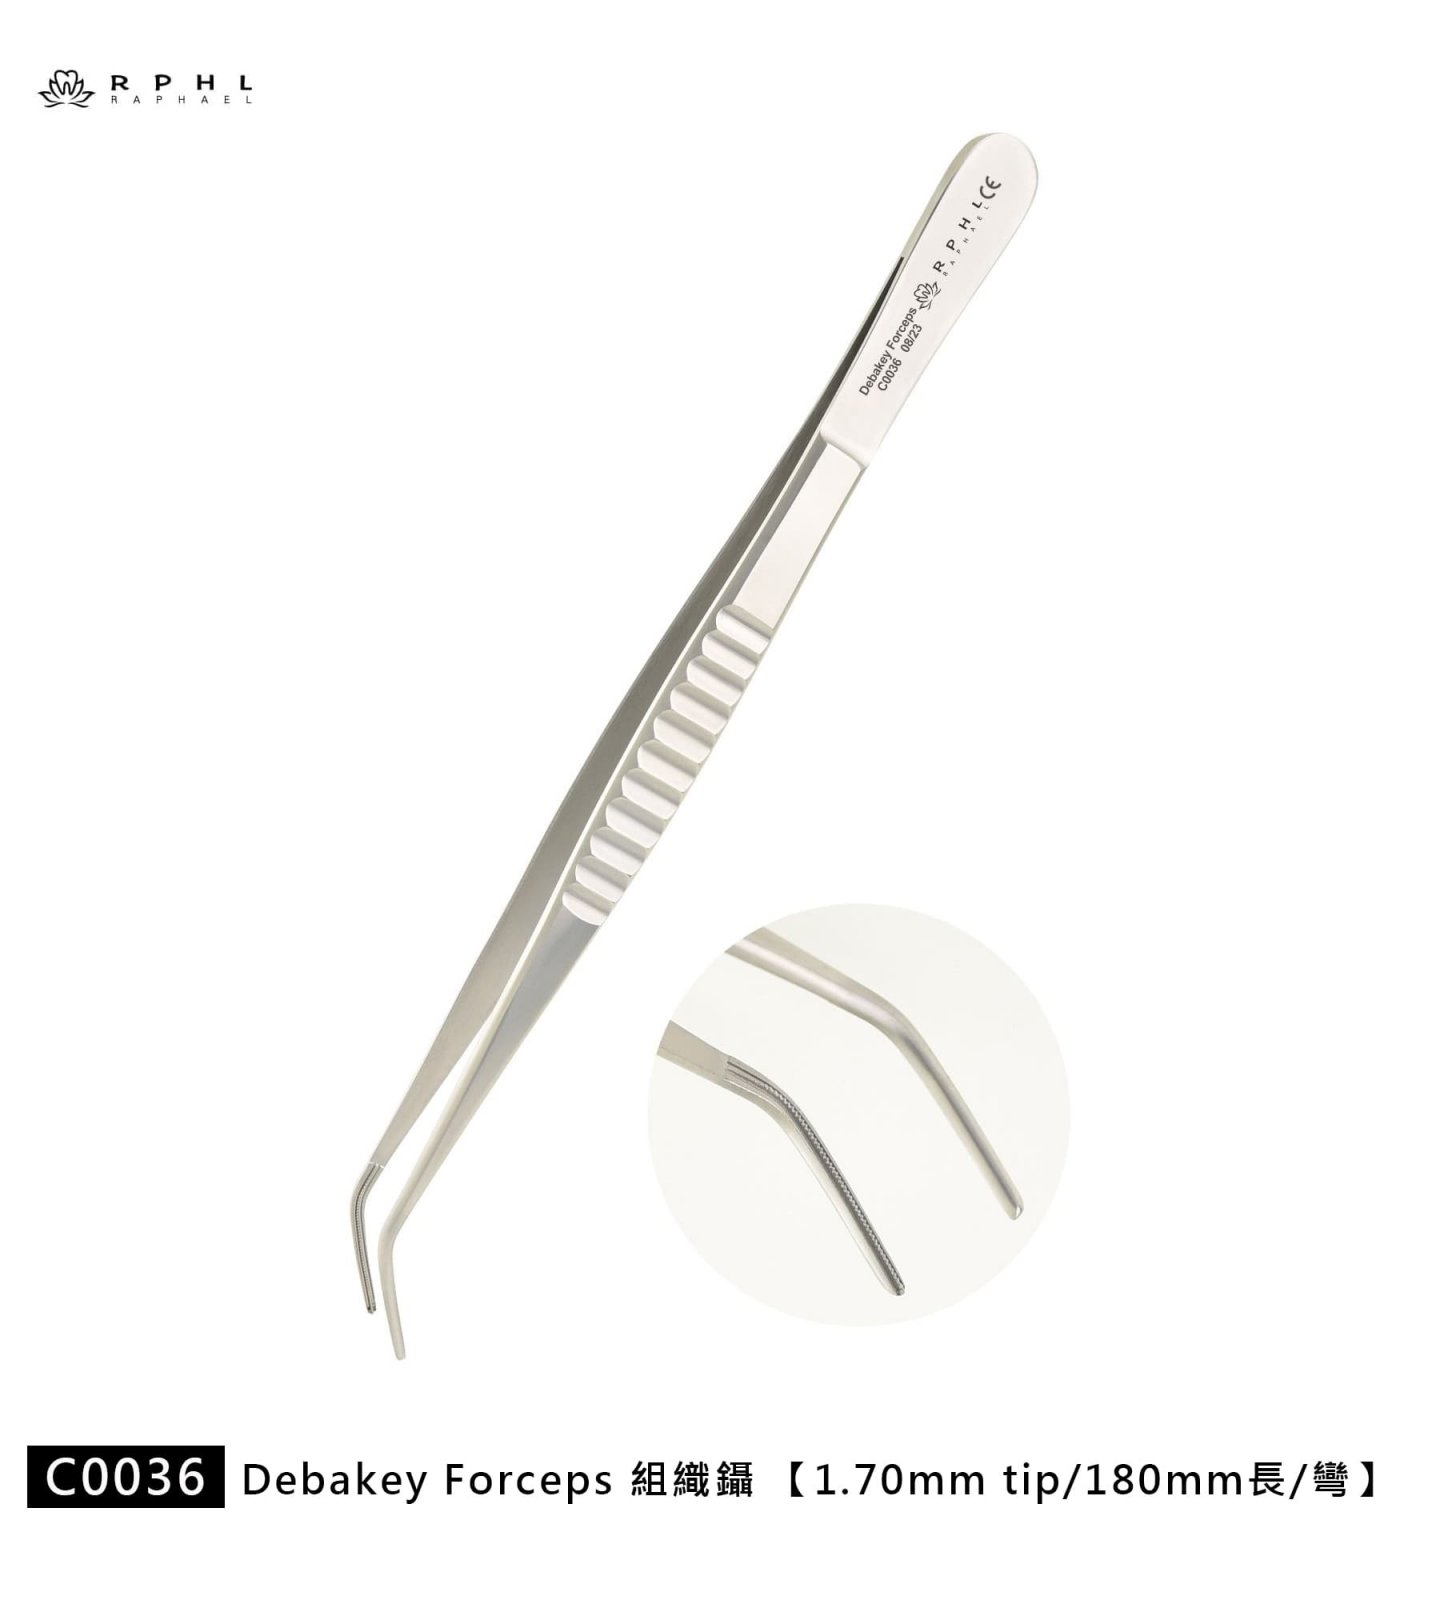 C0036 組織鑷 Debakey Forceps 器械 牙科 牙醫 手術 醫療 植牙